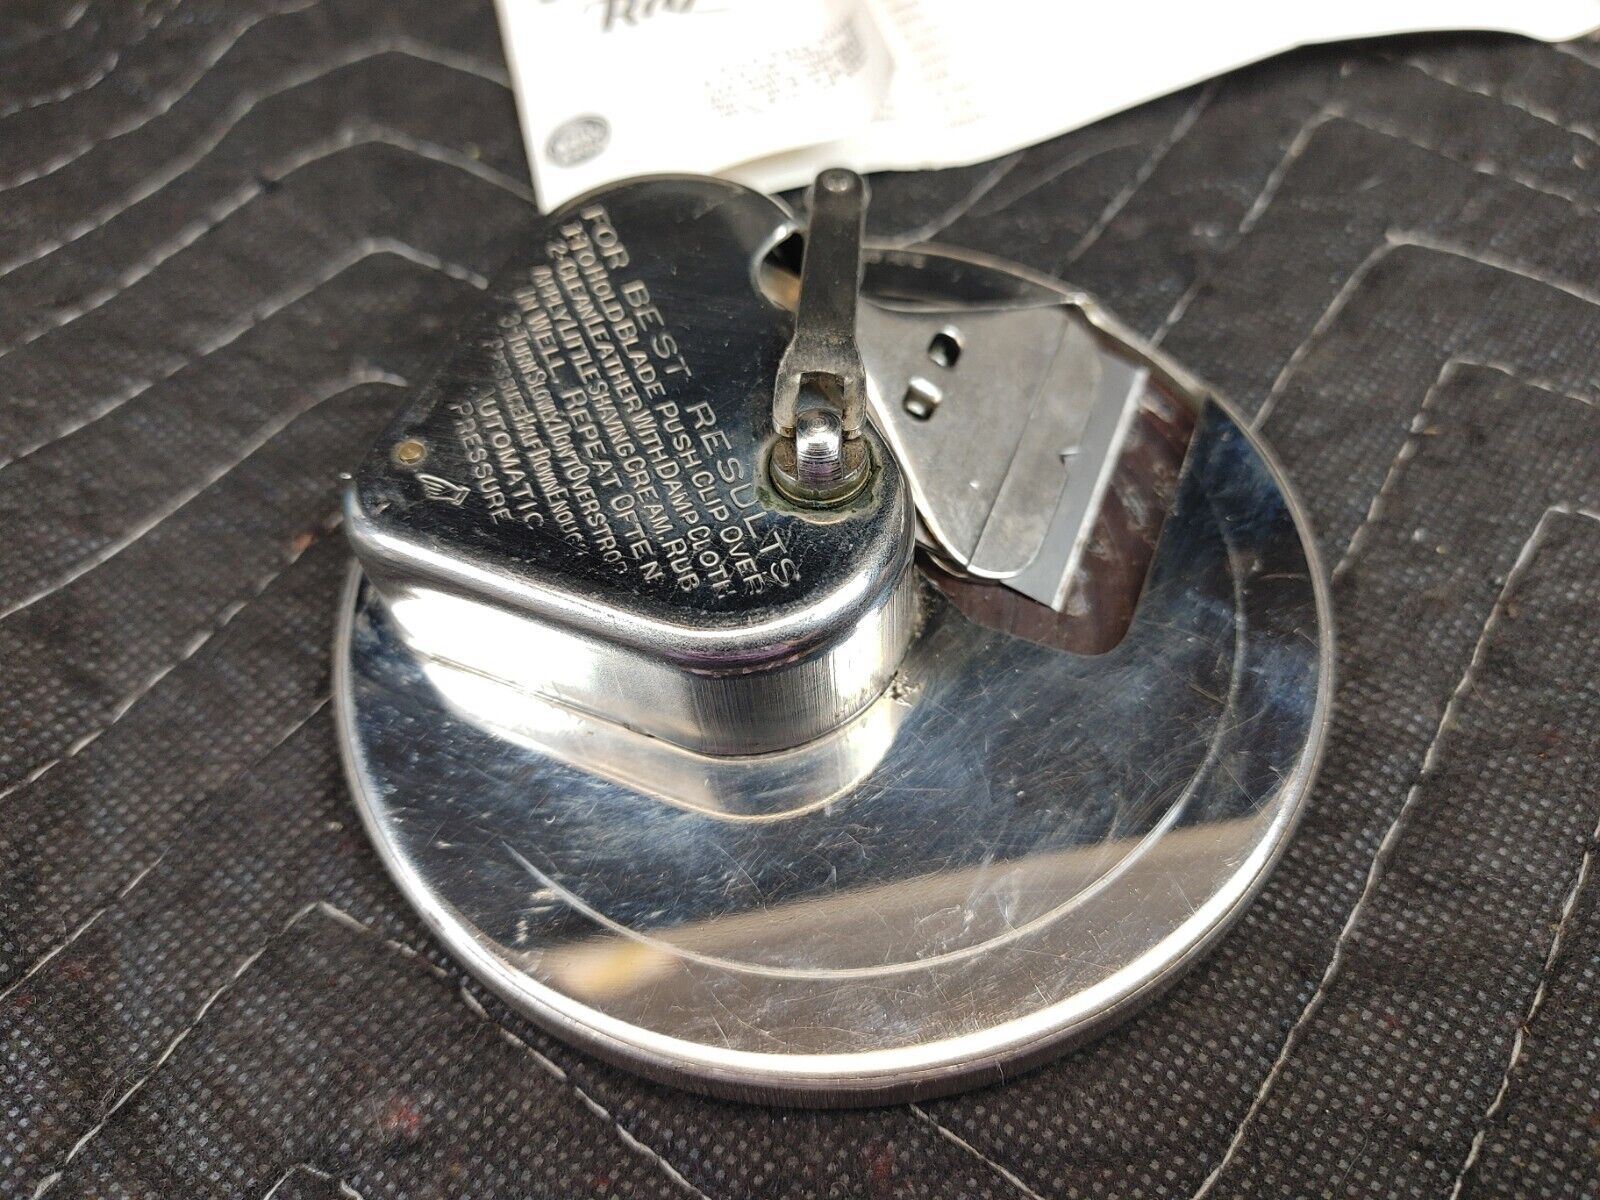 Vintage Kriss Kross safety razor blade sharpener